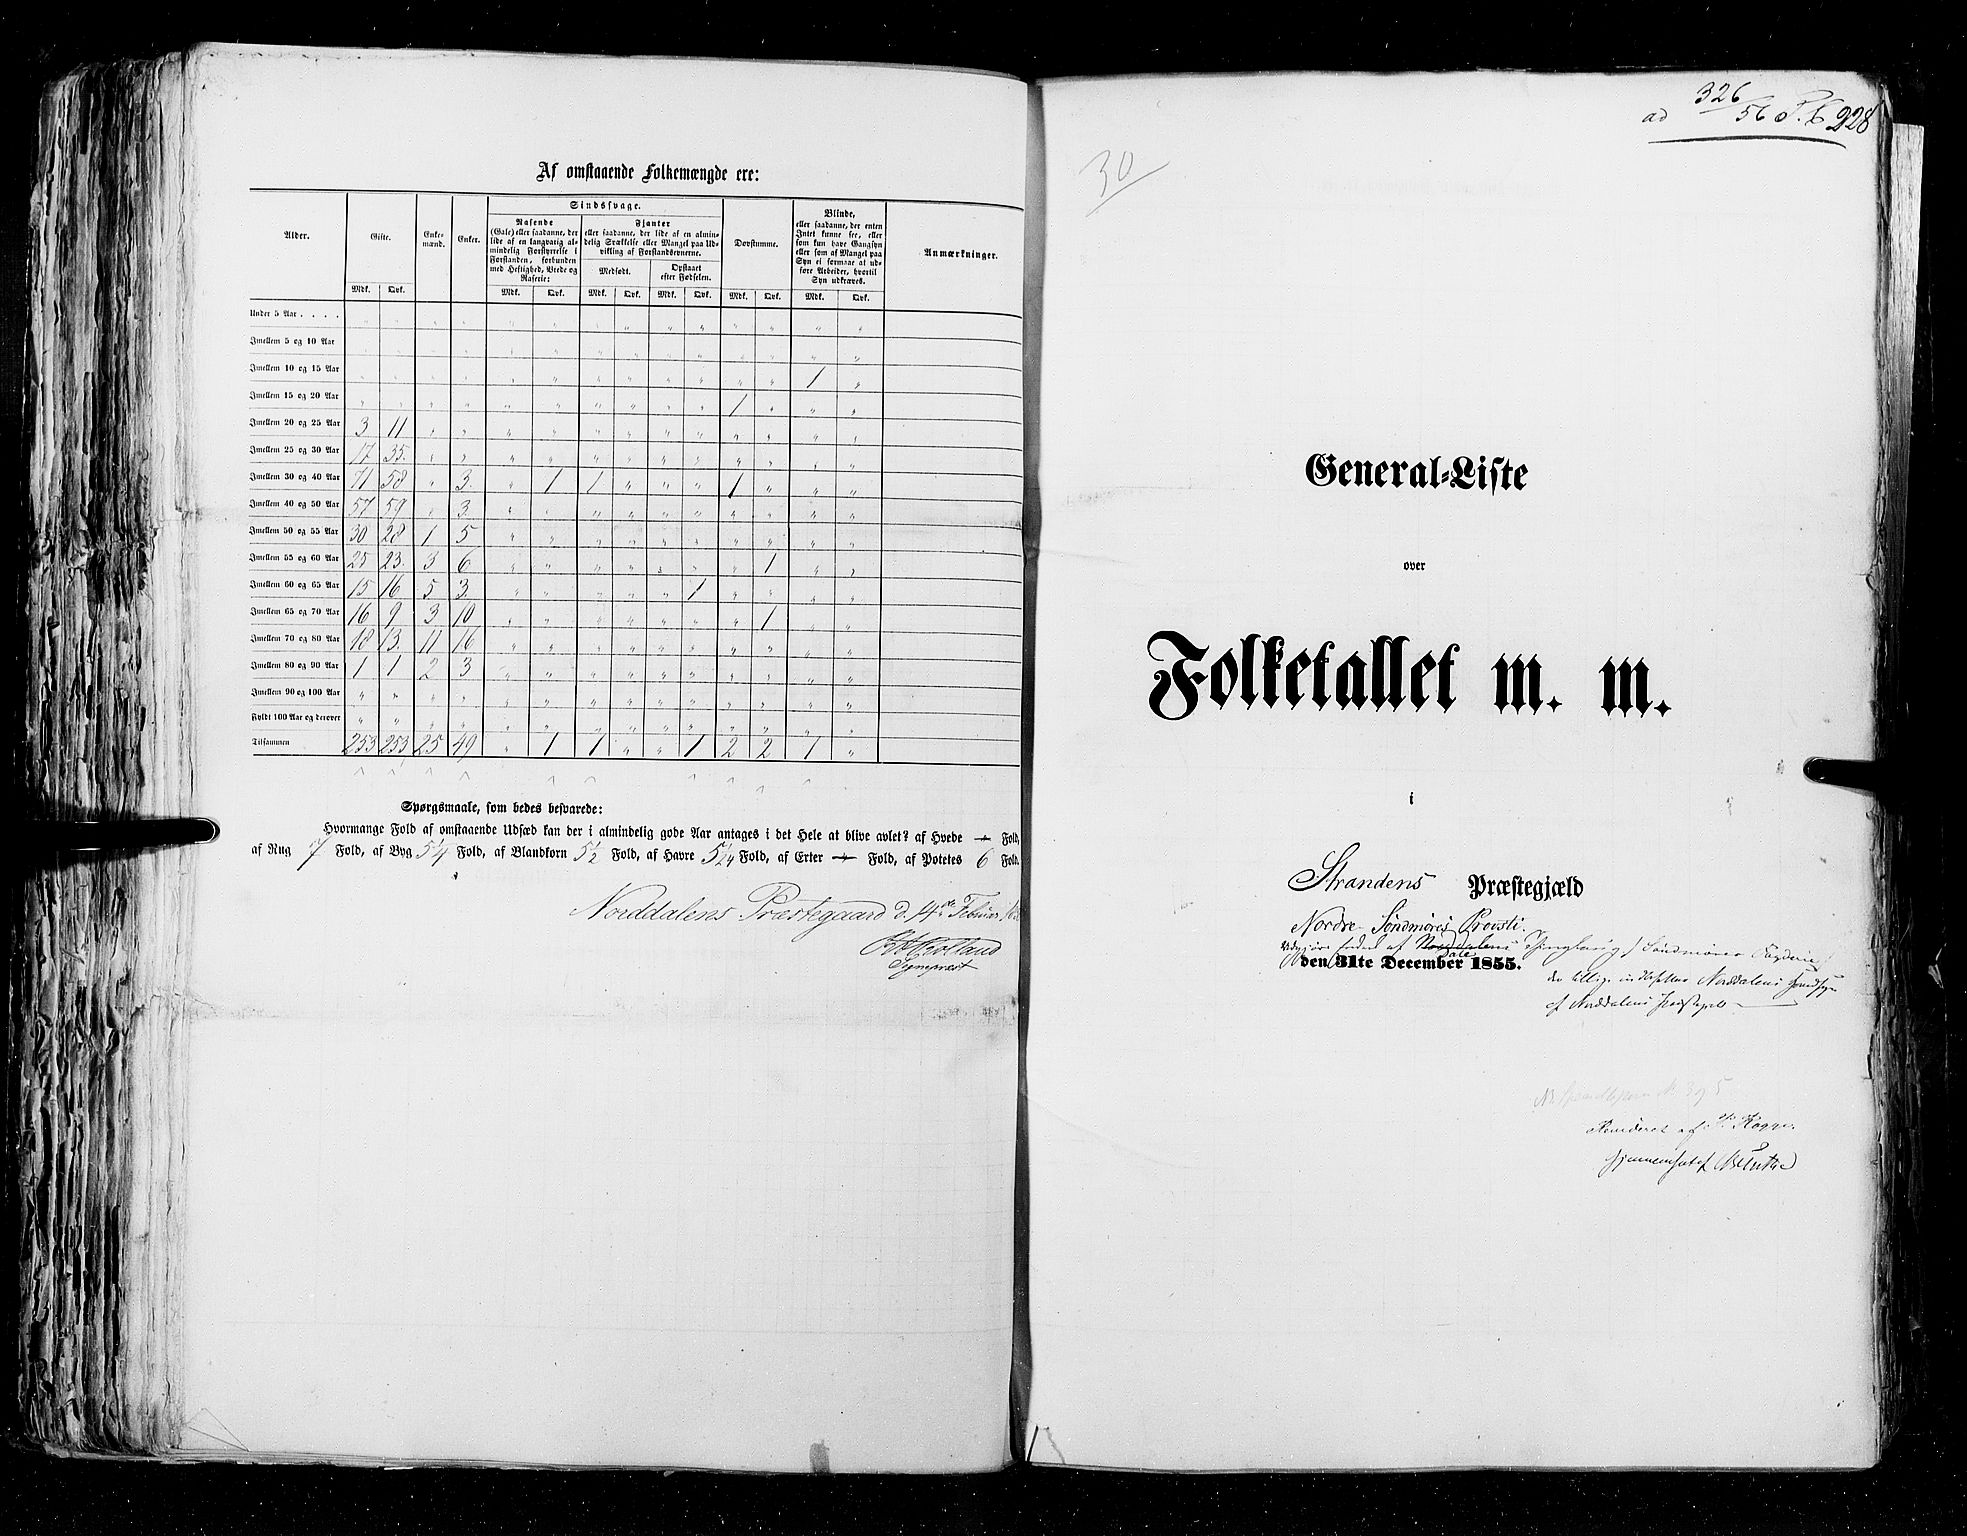 RA, Census 1855, vol. 5: Nordre Bergenhus amt, Romsdal amt og Søndre Trondhjem amt, 1855, p. 228